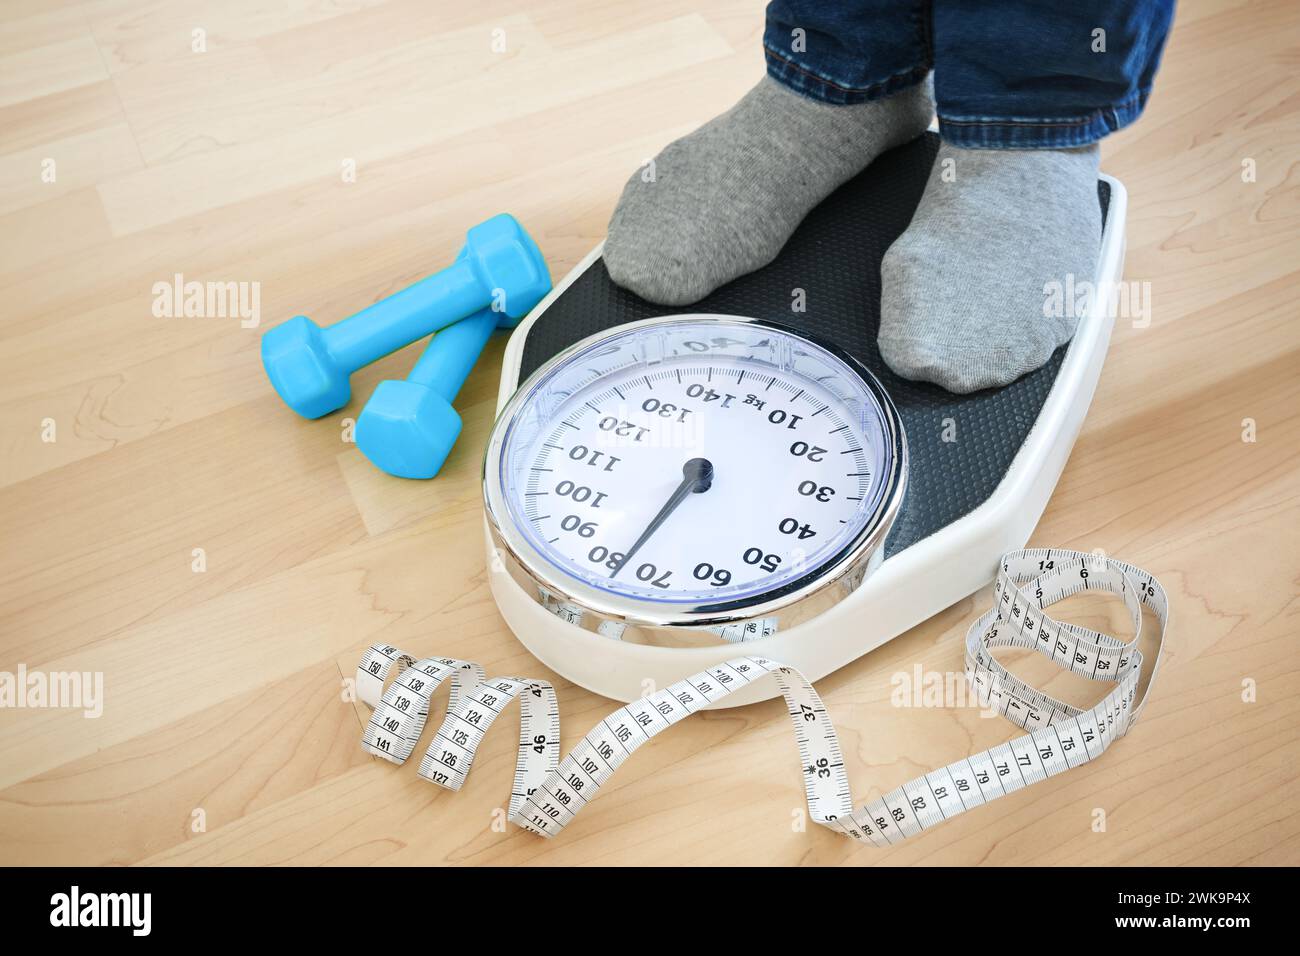 Pieds d'un homme en chaussettes grises debout sur une balance pour vérifier le poids après l'entraînement de fitness, haltères bleus et un ruban à mesurer couché à proximité sur un bois Banque D'Images